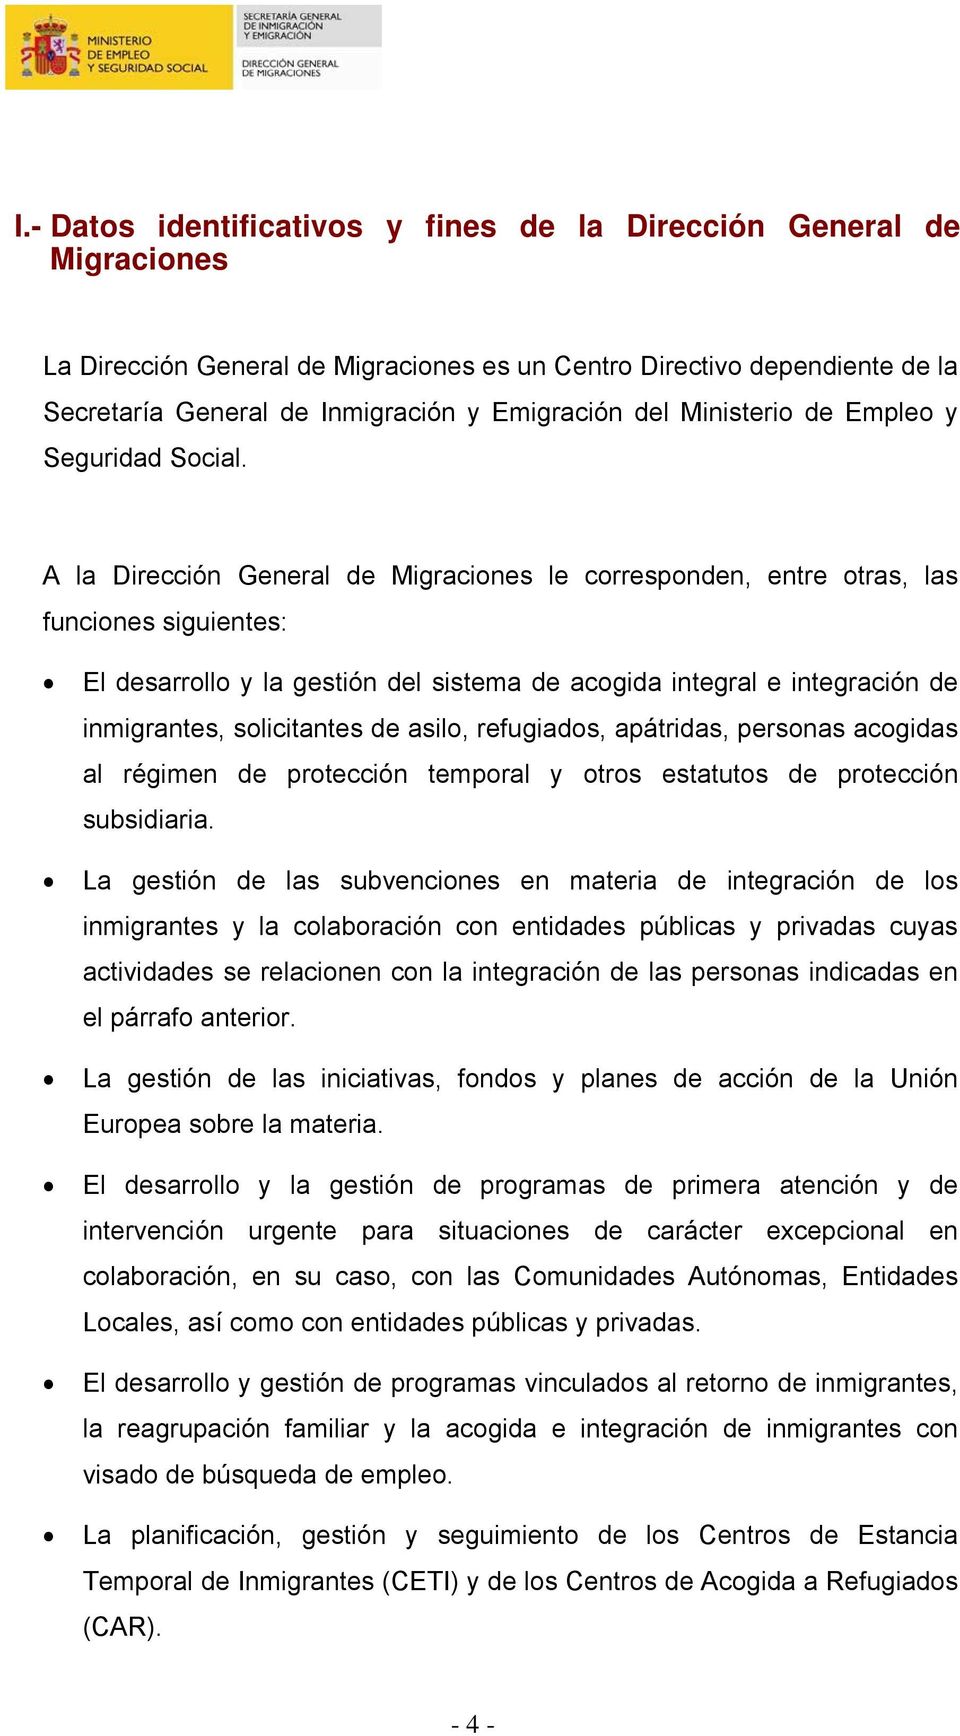 A la Dirección General de Migraciones le corresponden, entre otras, las funciones siguientes: El desarrollo y la gestión del sistema de acogida integral e integración de inmigrantes, solicitantes de